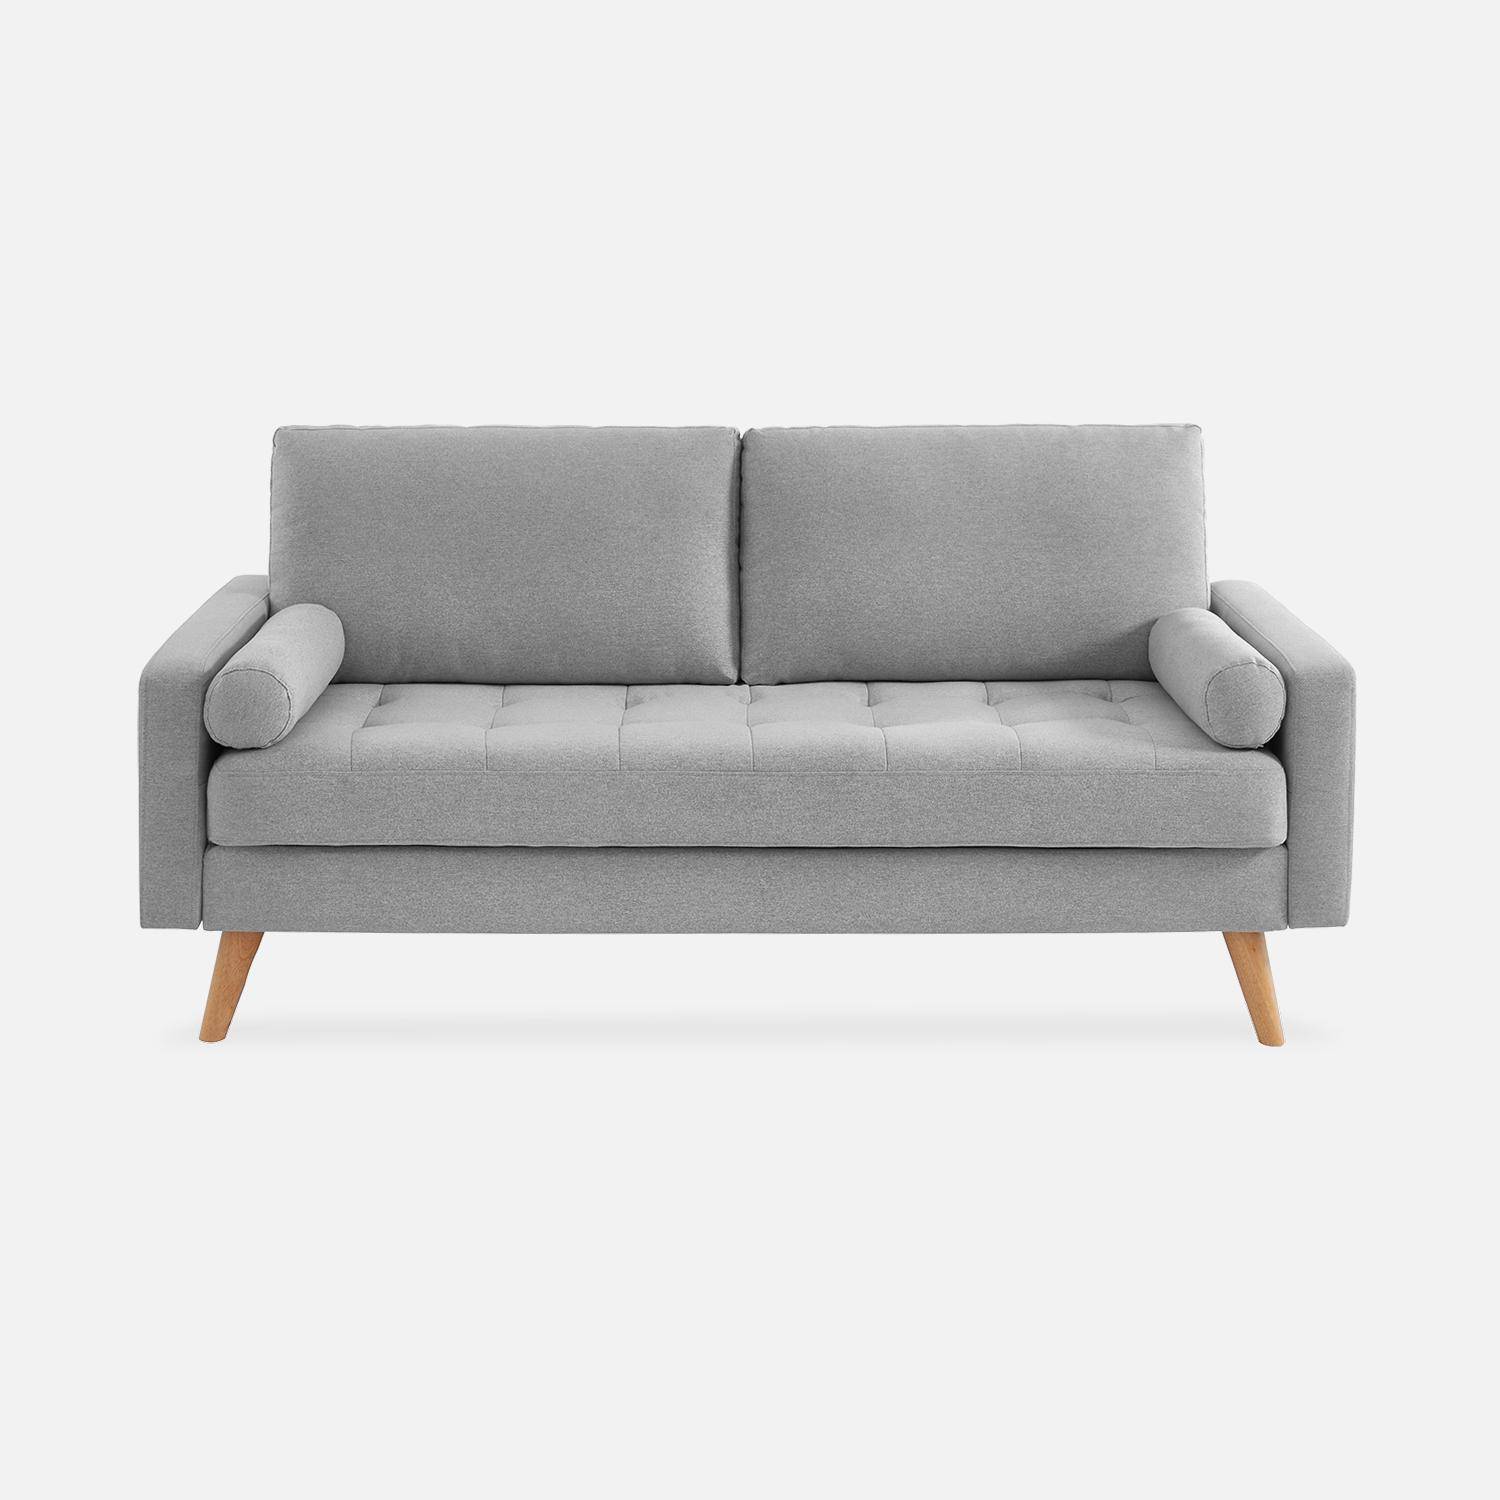 Canapé en tissu gris clair, 3 places scandinave fixe, droit, pieds bois  Photo4